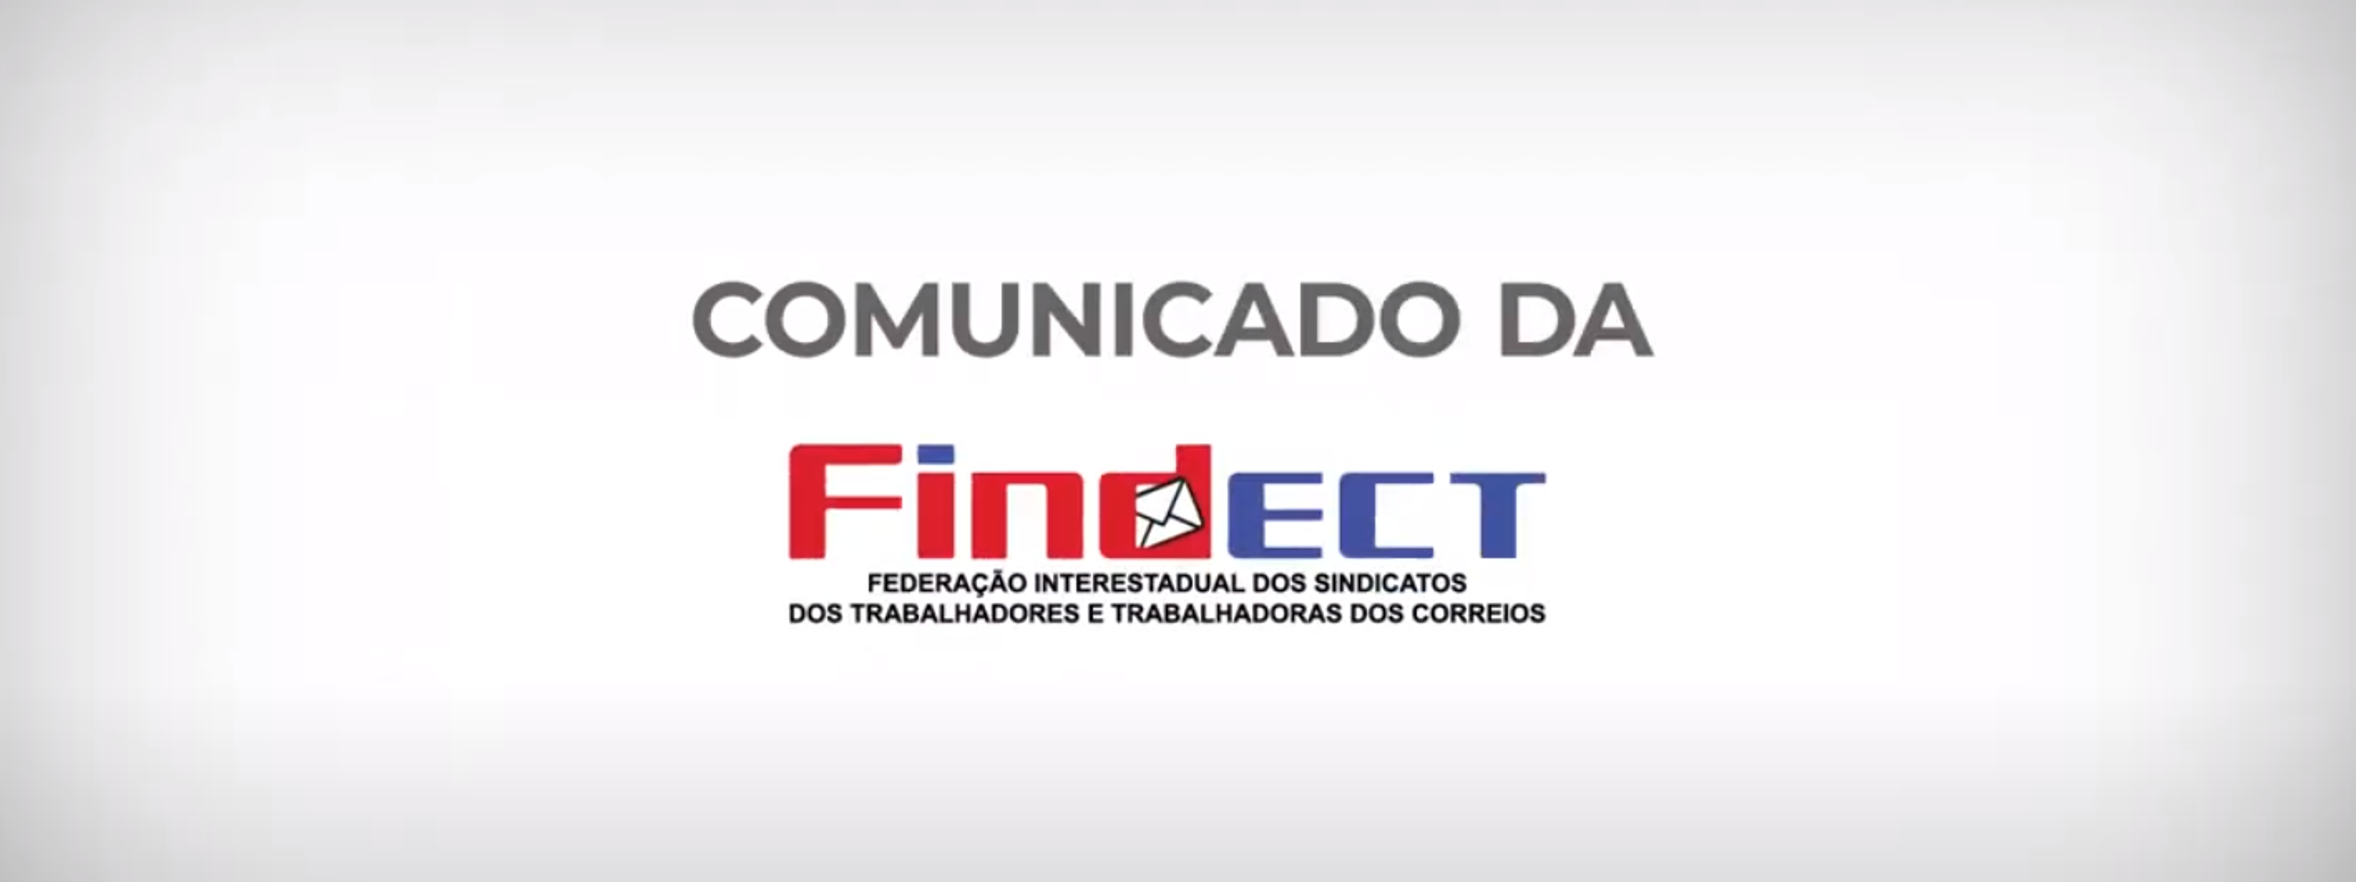 Comunicado Oficial da FINDECT/SINDECTEB ao Povo Brasileiro